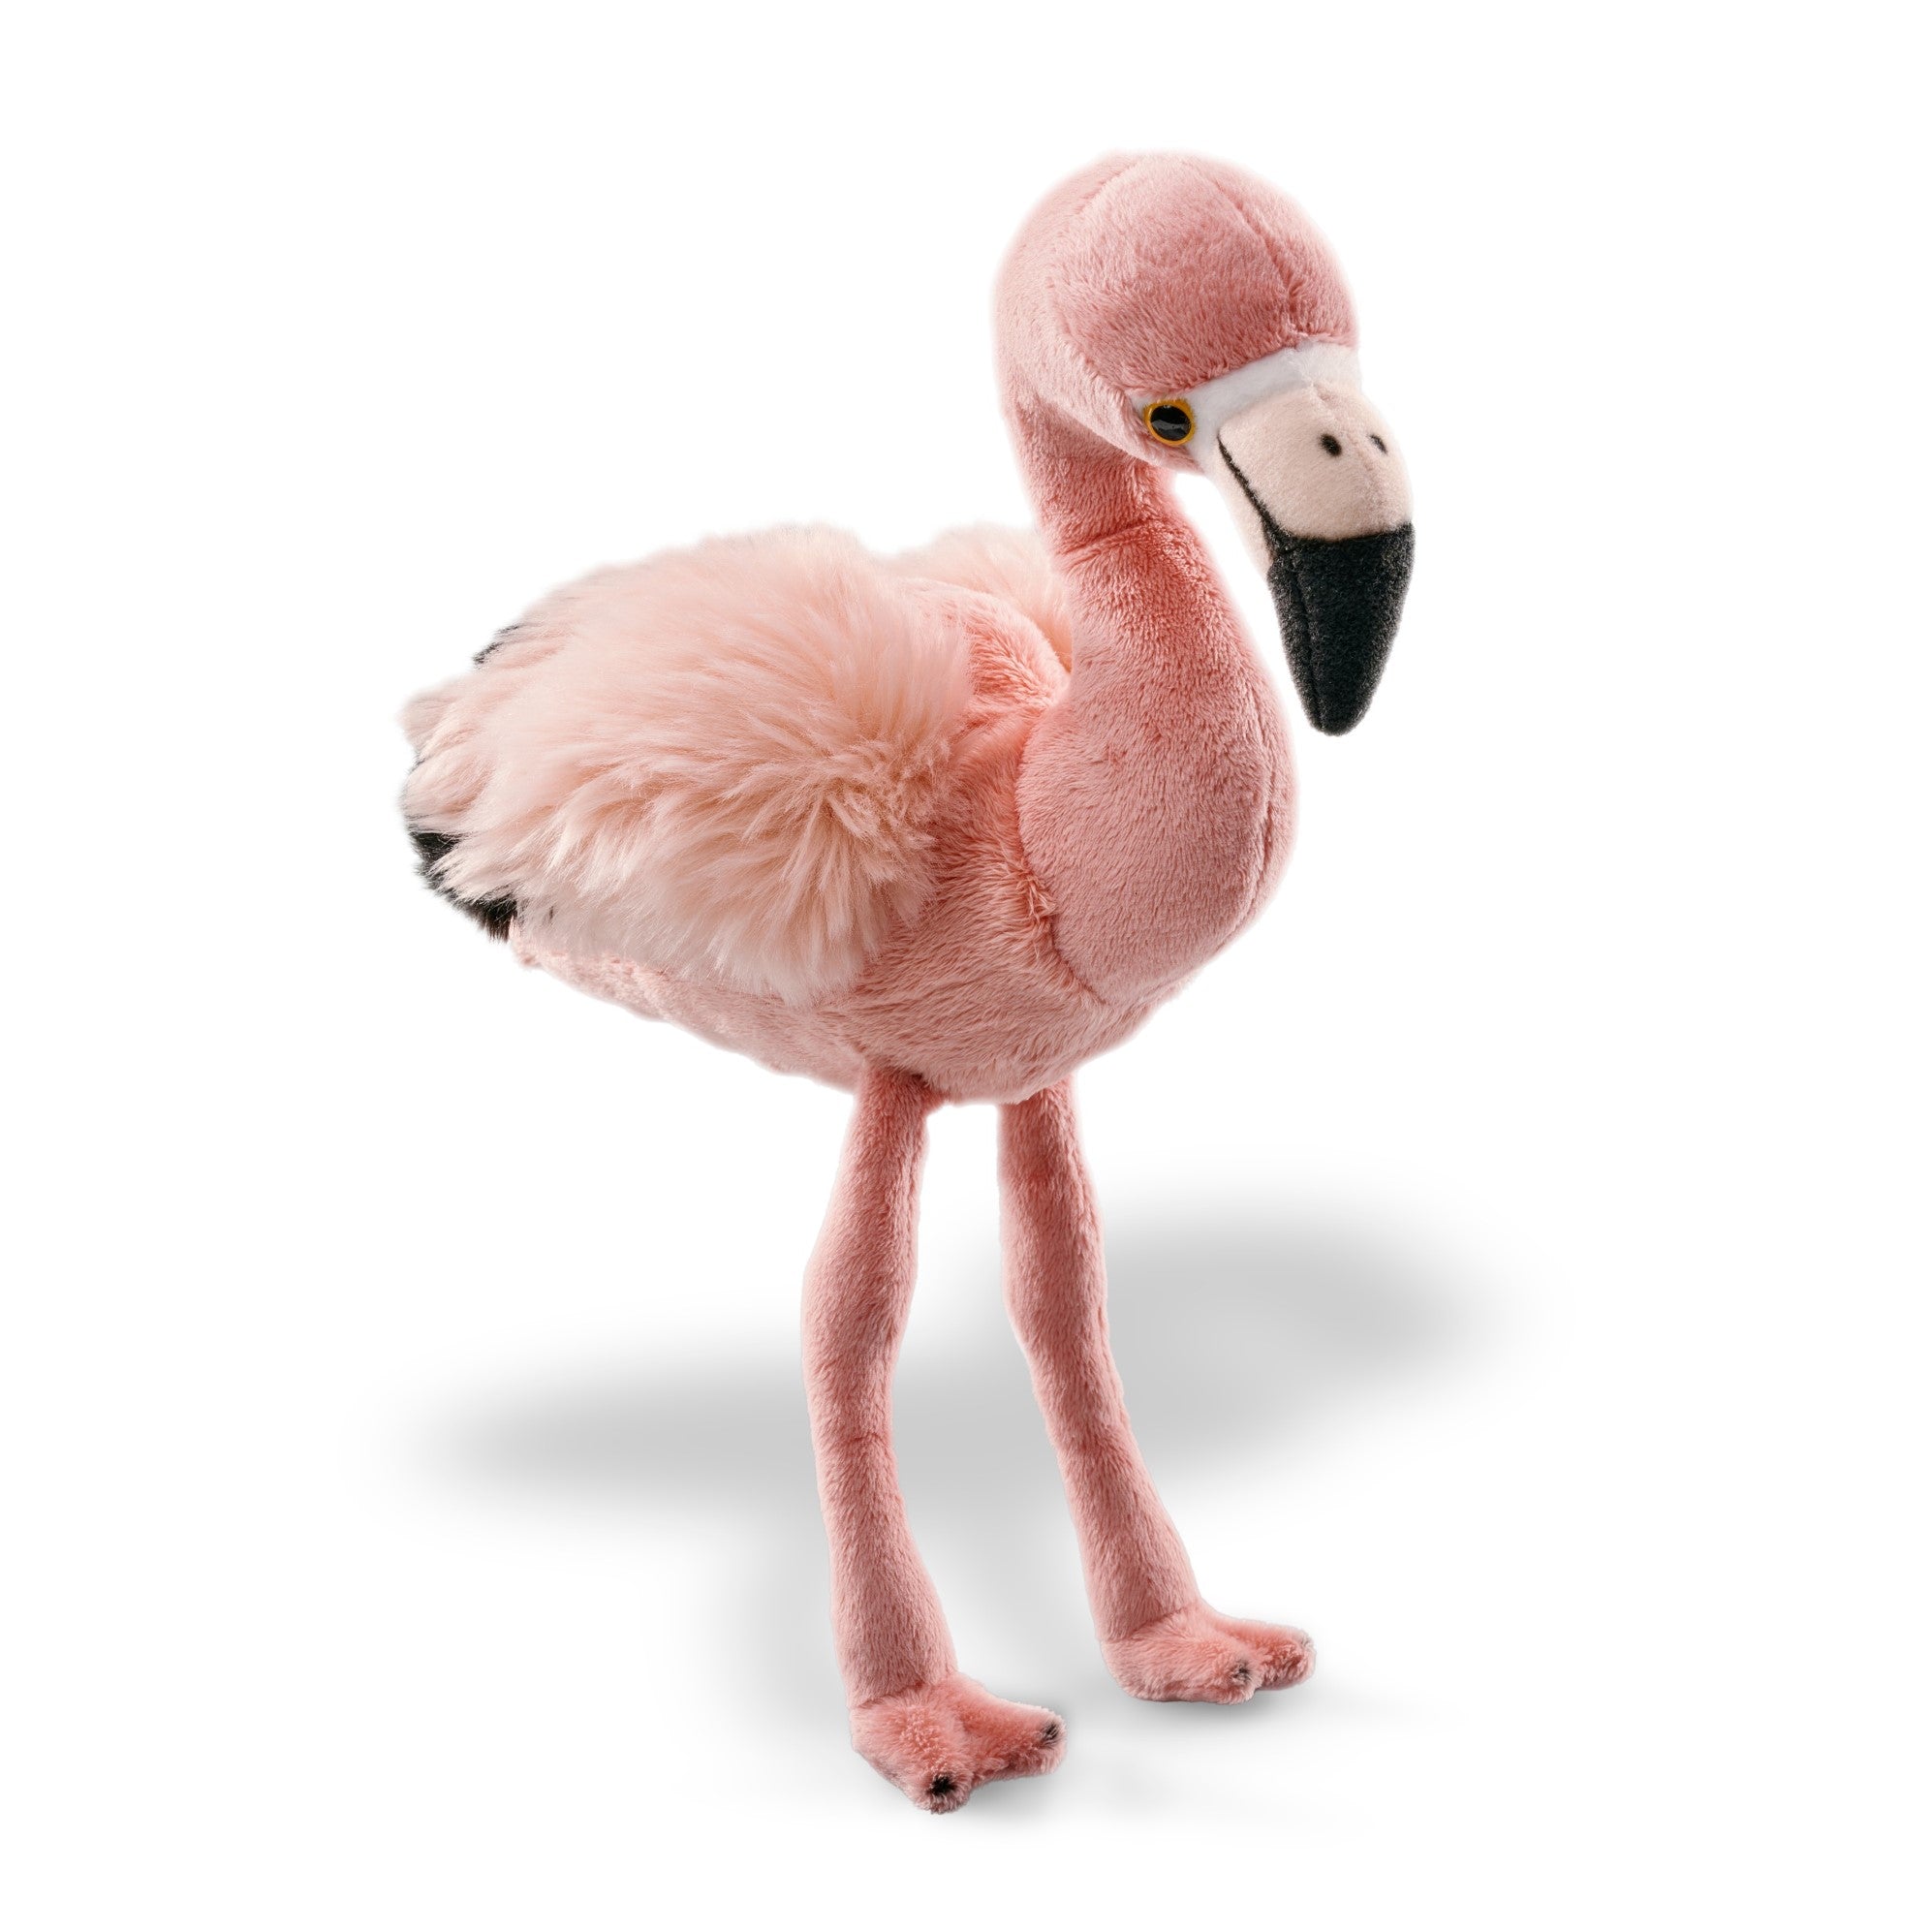 A photo of the flamingo plush toy